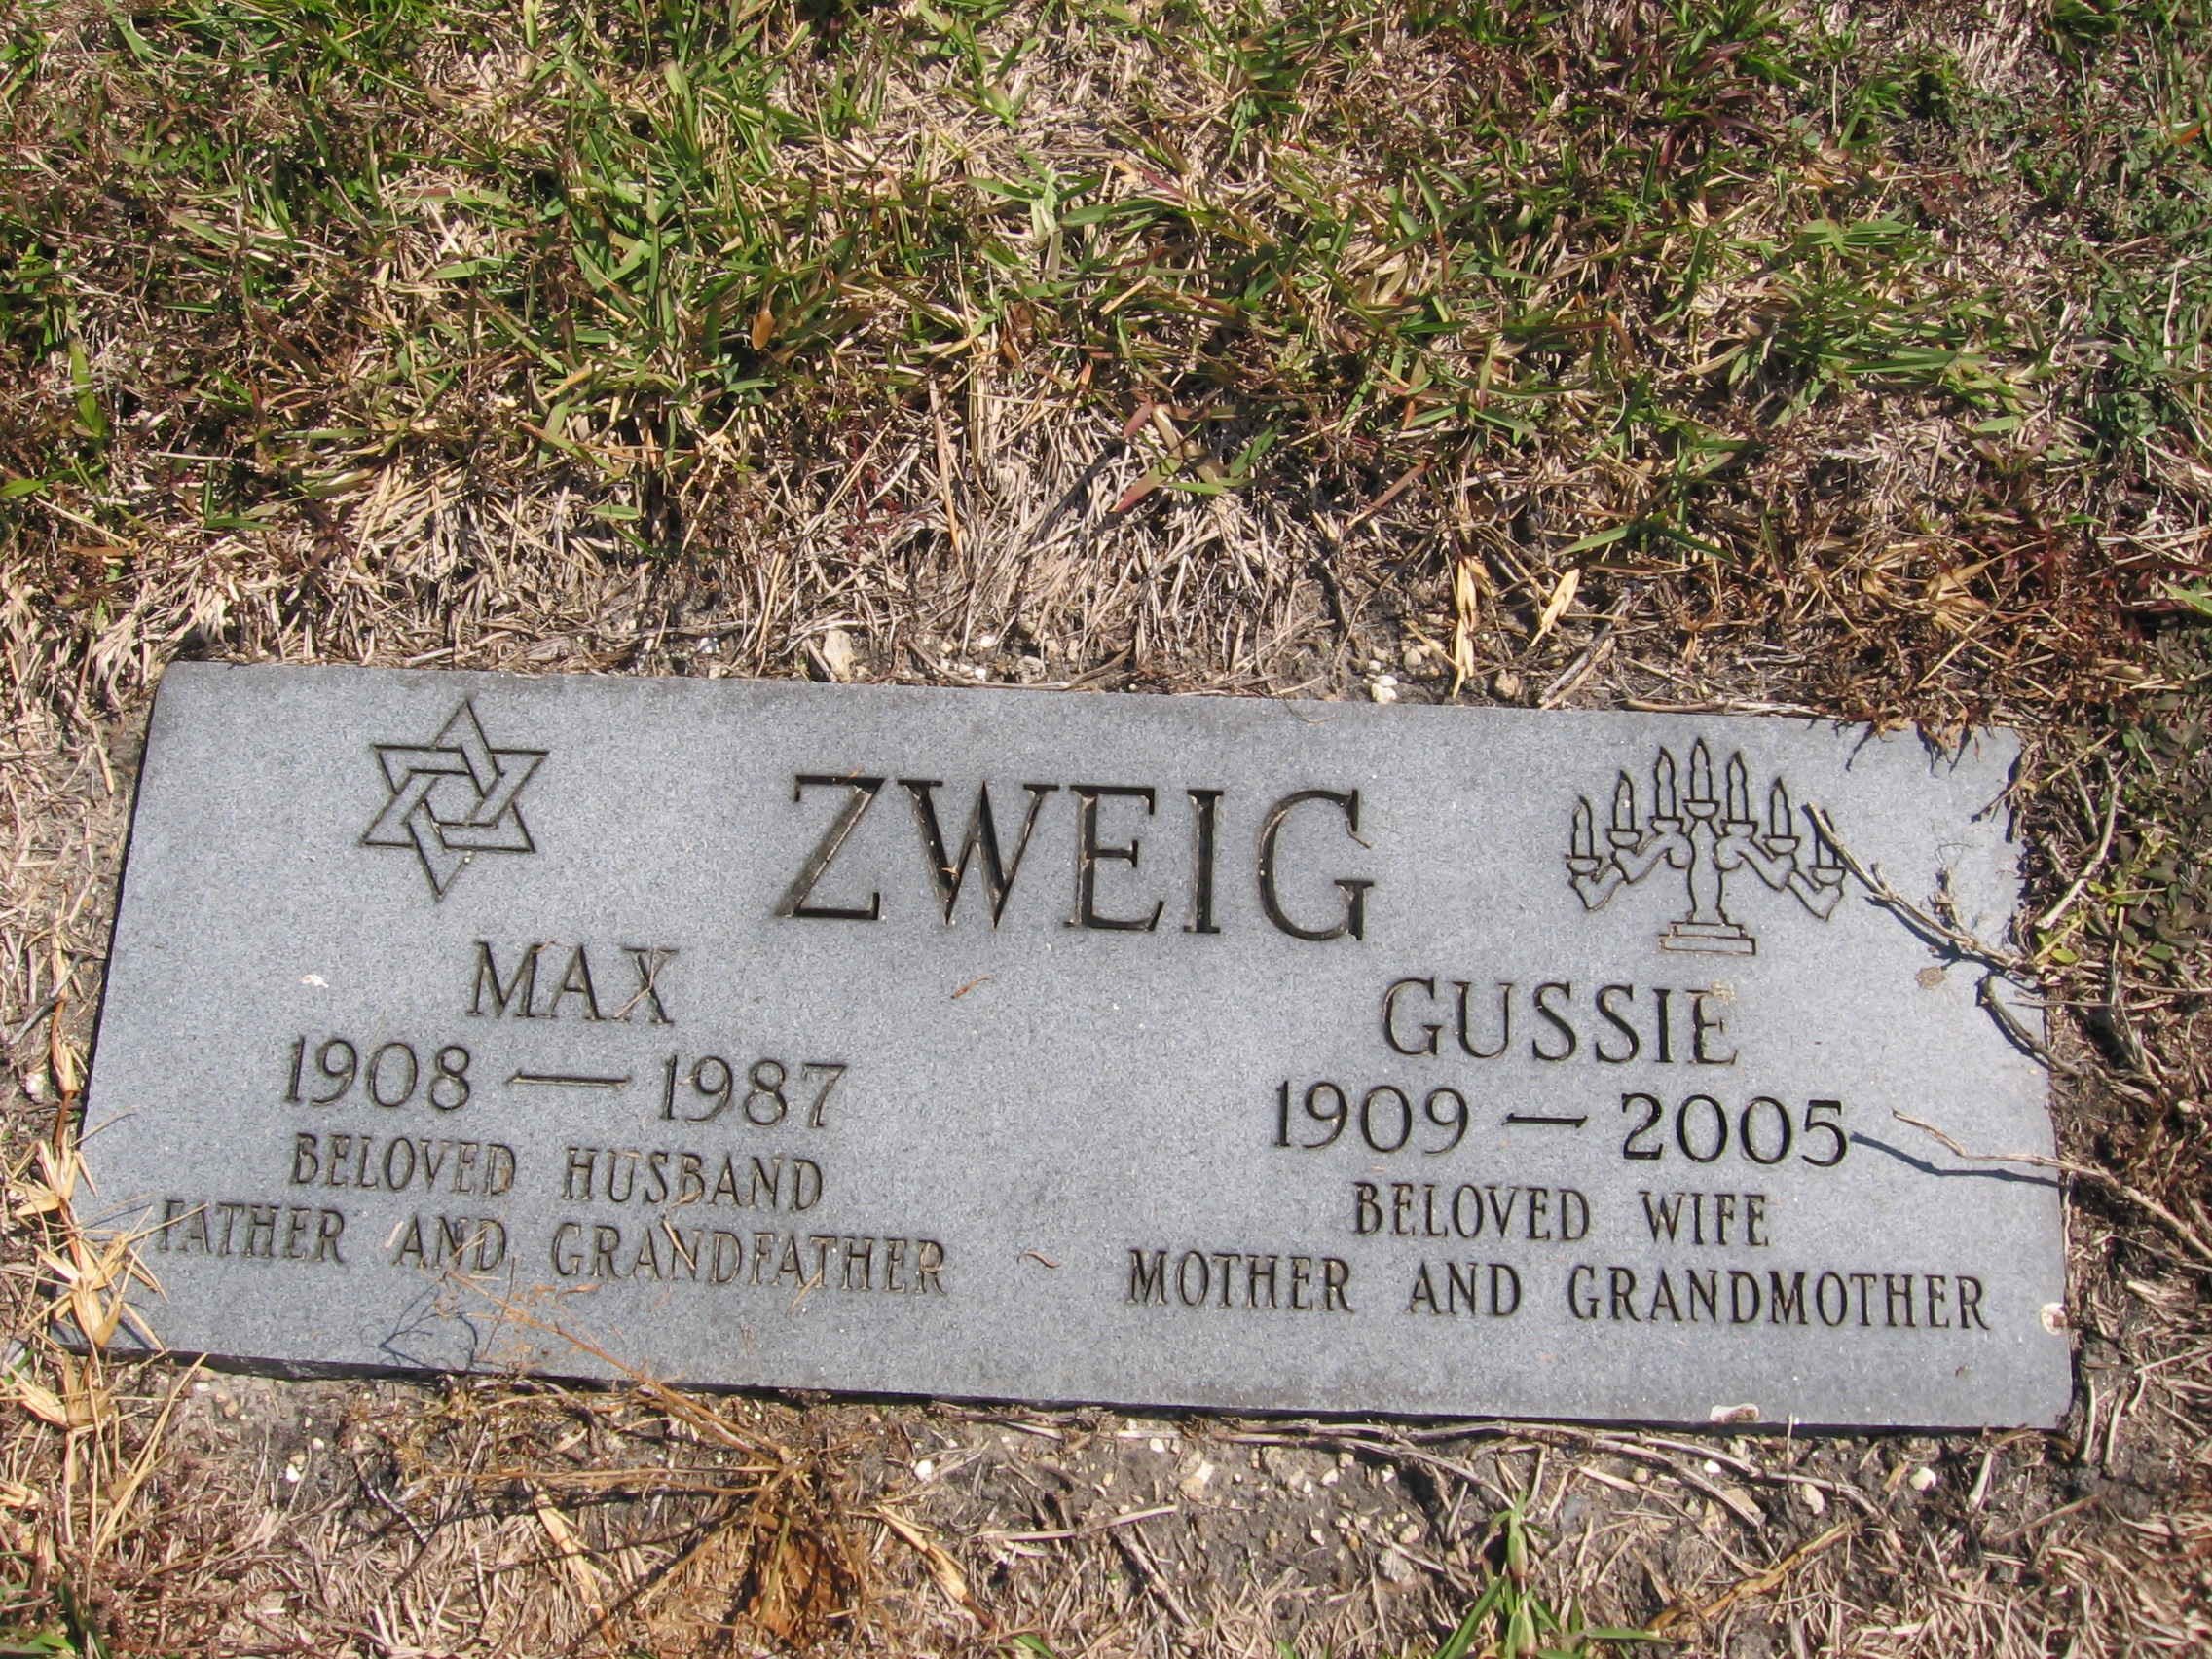 Gussie Zweig